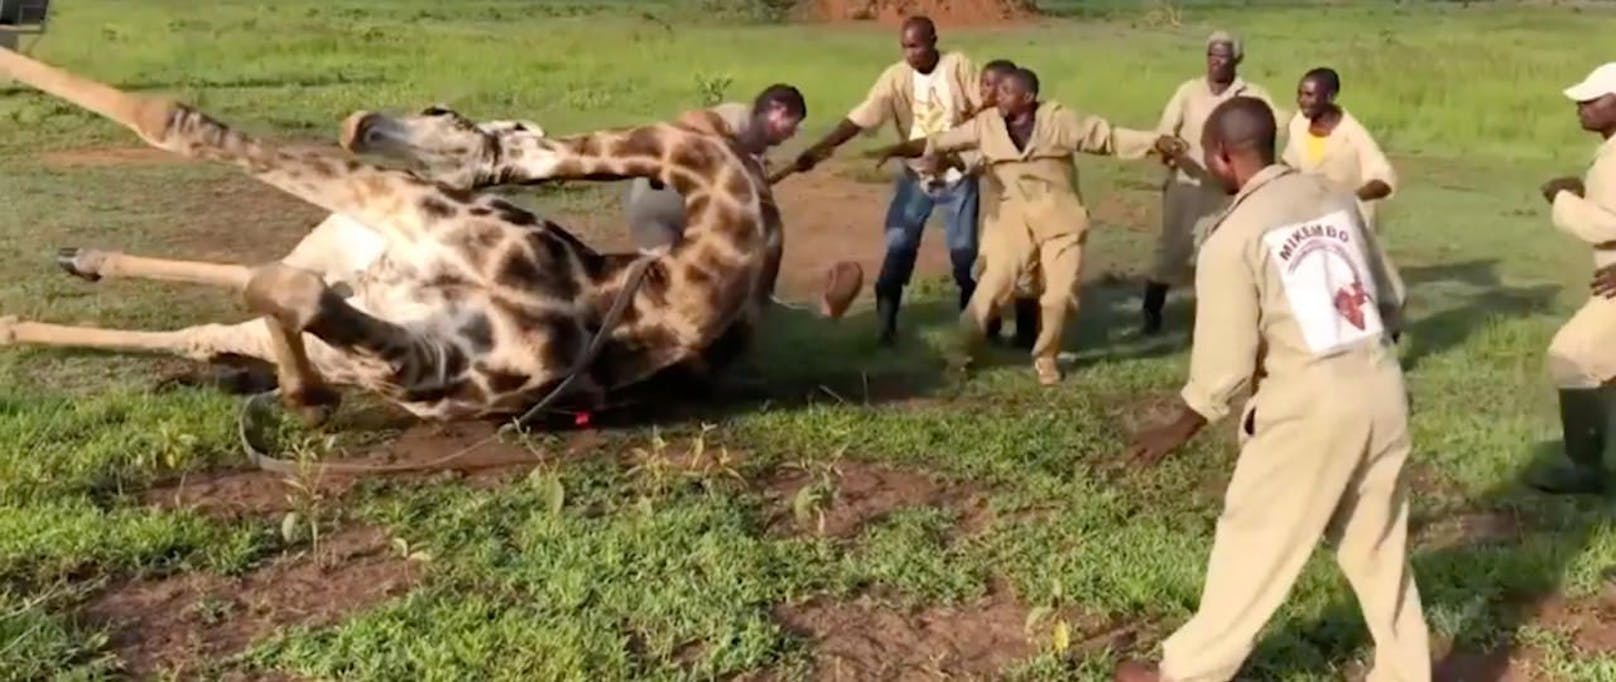 Achtung, Giraffe! Die acht Helfer schaffen es nur mit Mühe und Not, das Tier zu bändigen. 